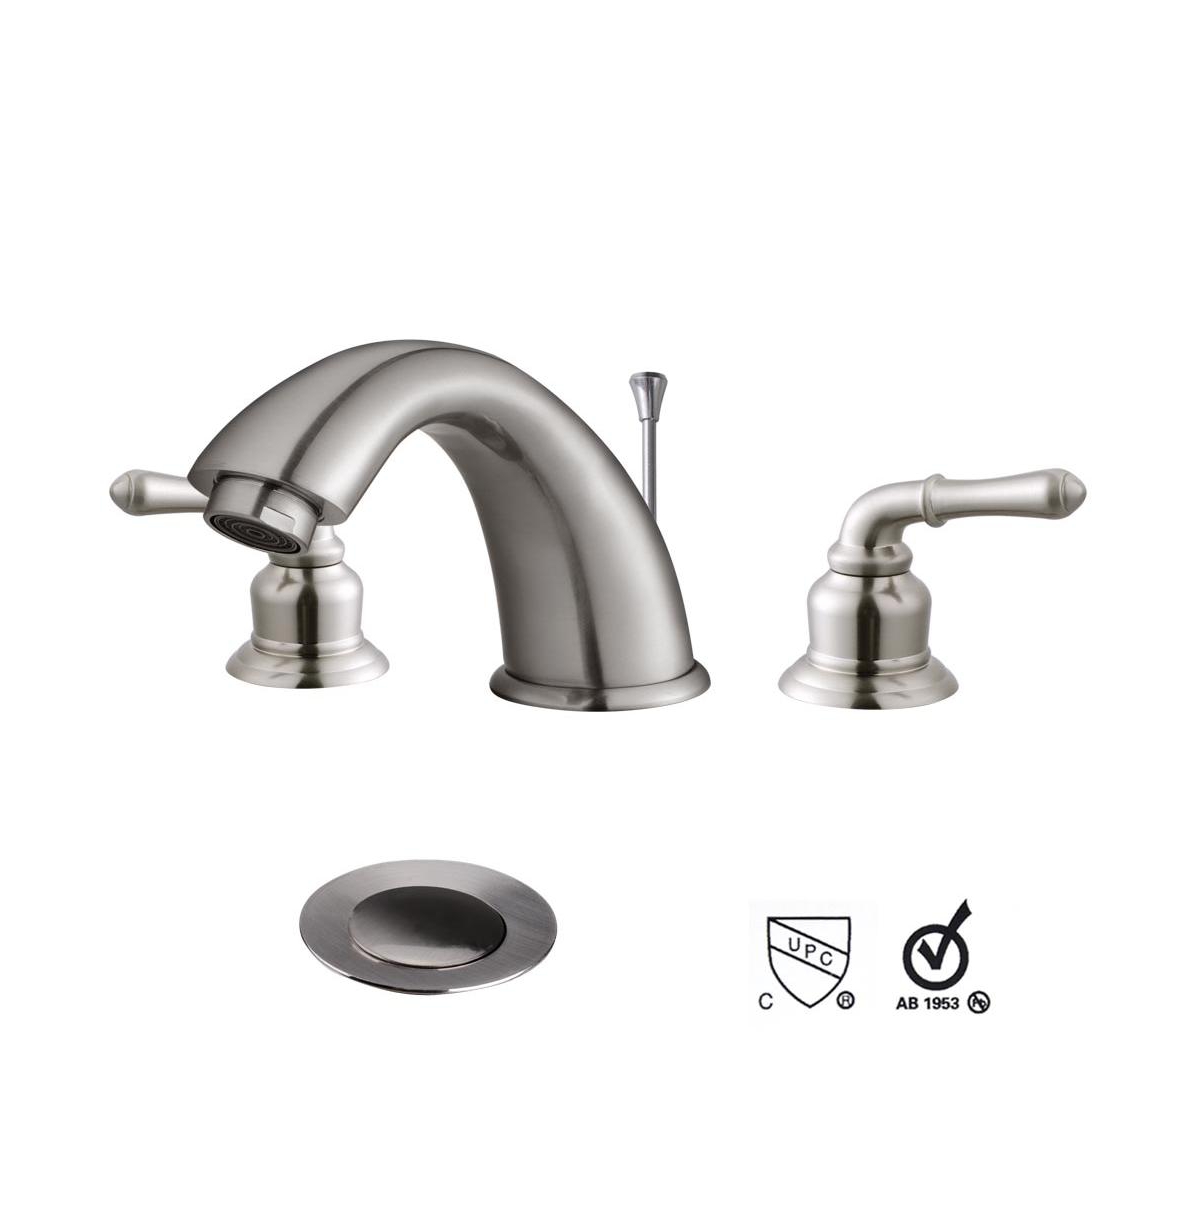 Faucet Bathroom Vessel Sink 3 Holes Lavatory Faucet w/ Drain - Silver